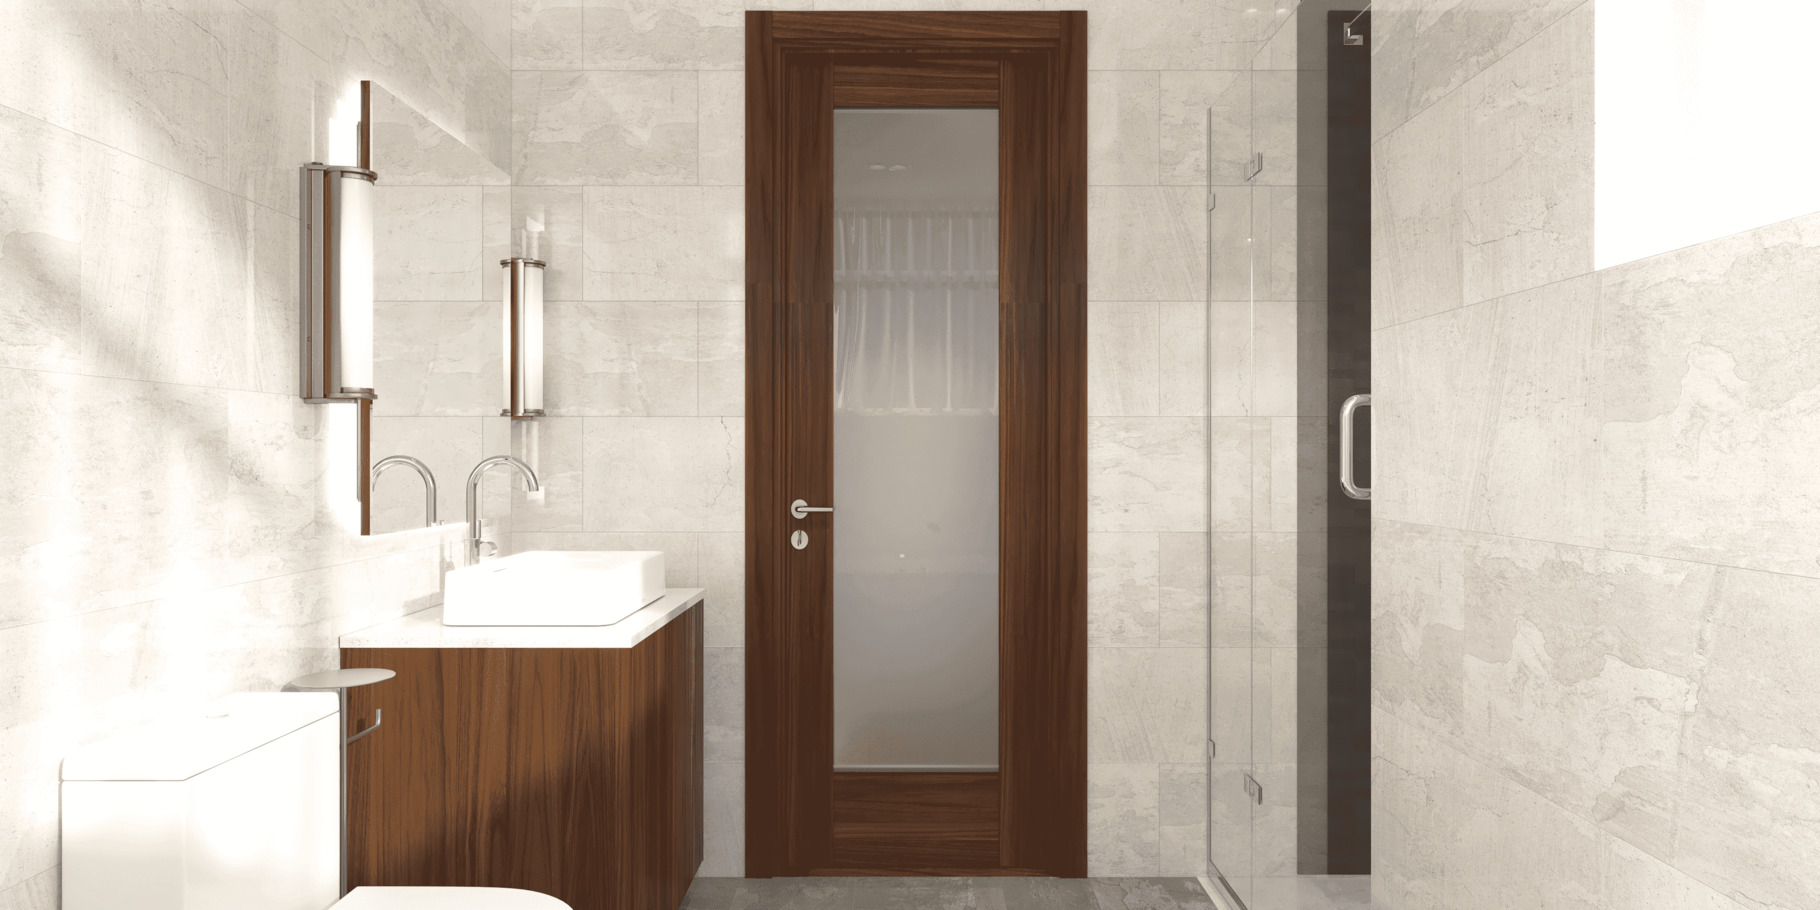 Lựa chọn vật dụng cho thiết kế nội thất phòng tắm